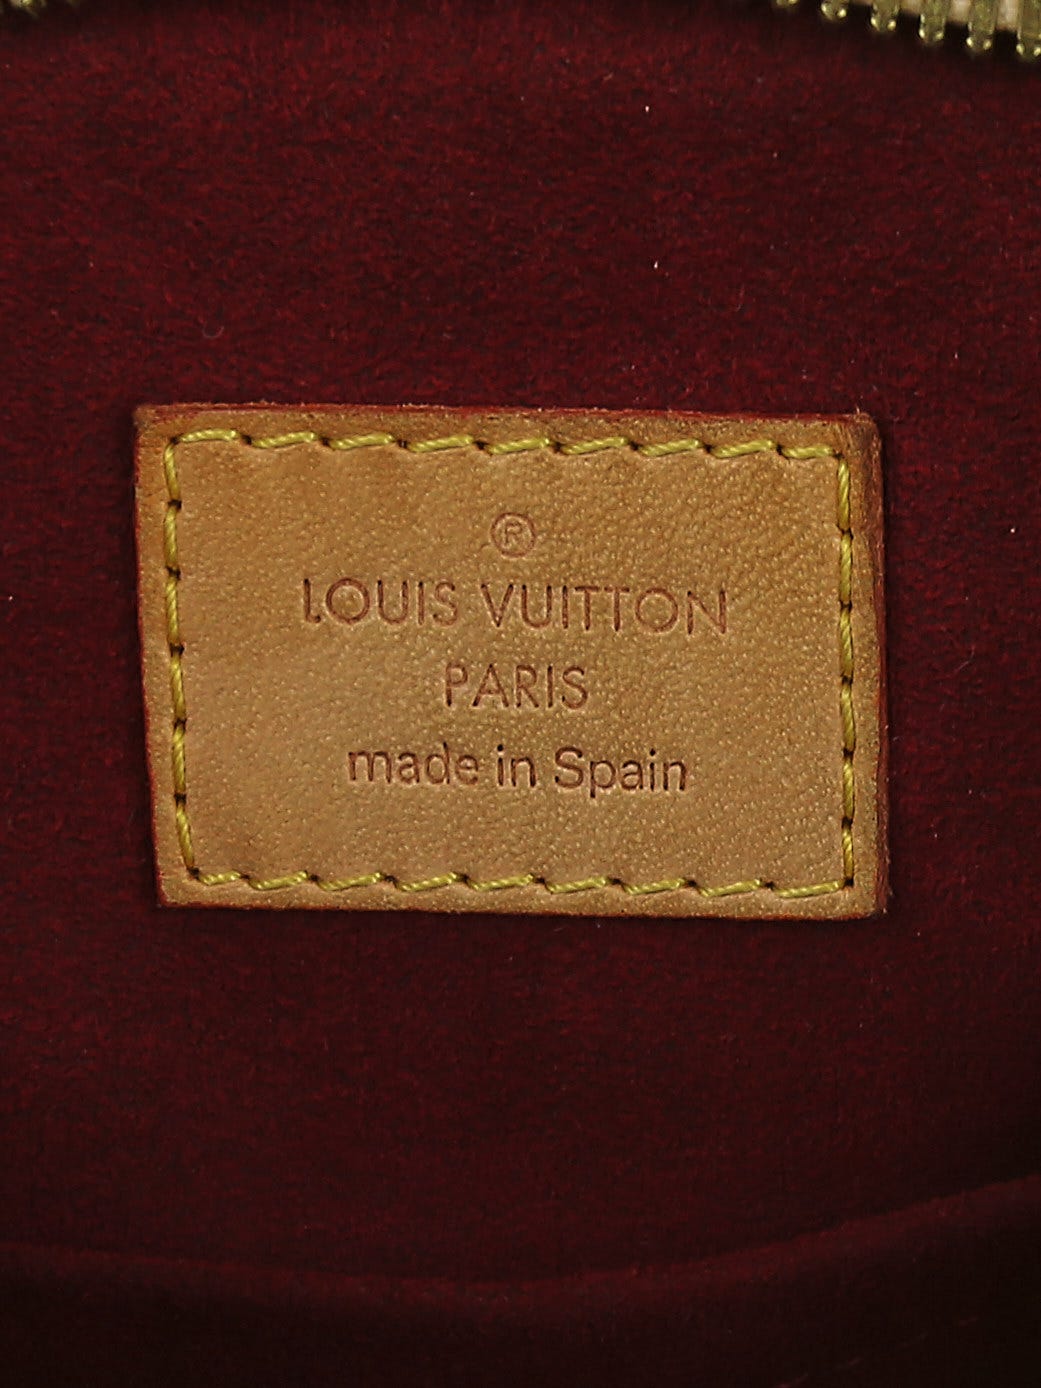 LOUIS VUITTON LOUIS VUITTON Greta Shoulder Bag M40195 Monogram Multicolor  canvas blanc used M40195